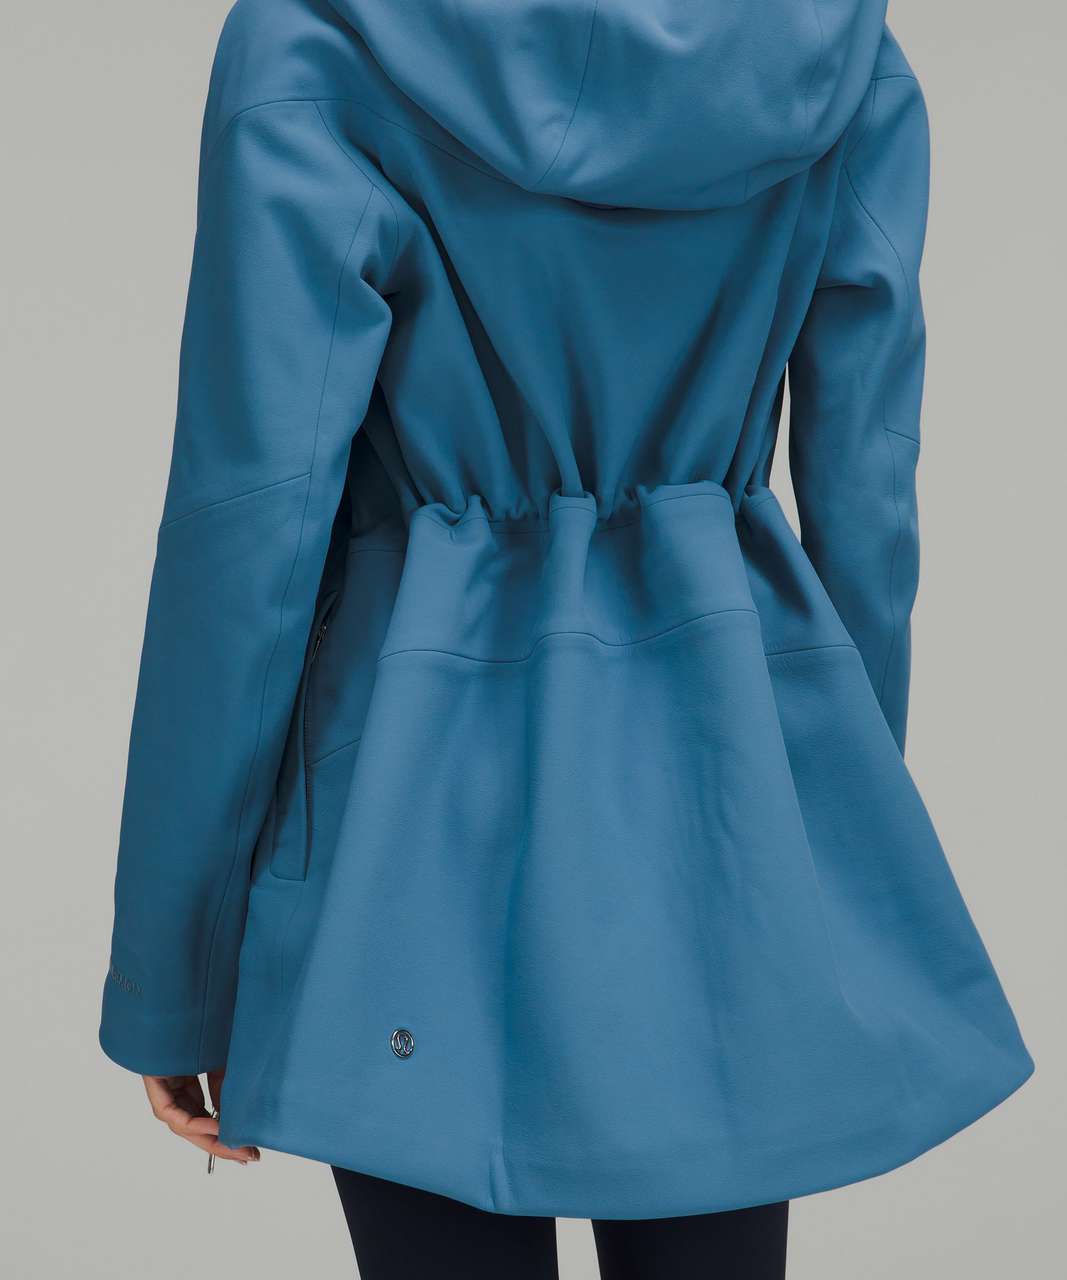 Brand New Womans Lululemon Cross Chill Jacket RepelShell sz 10 Sheer Blue